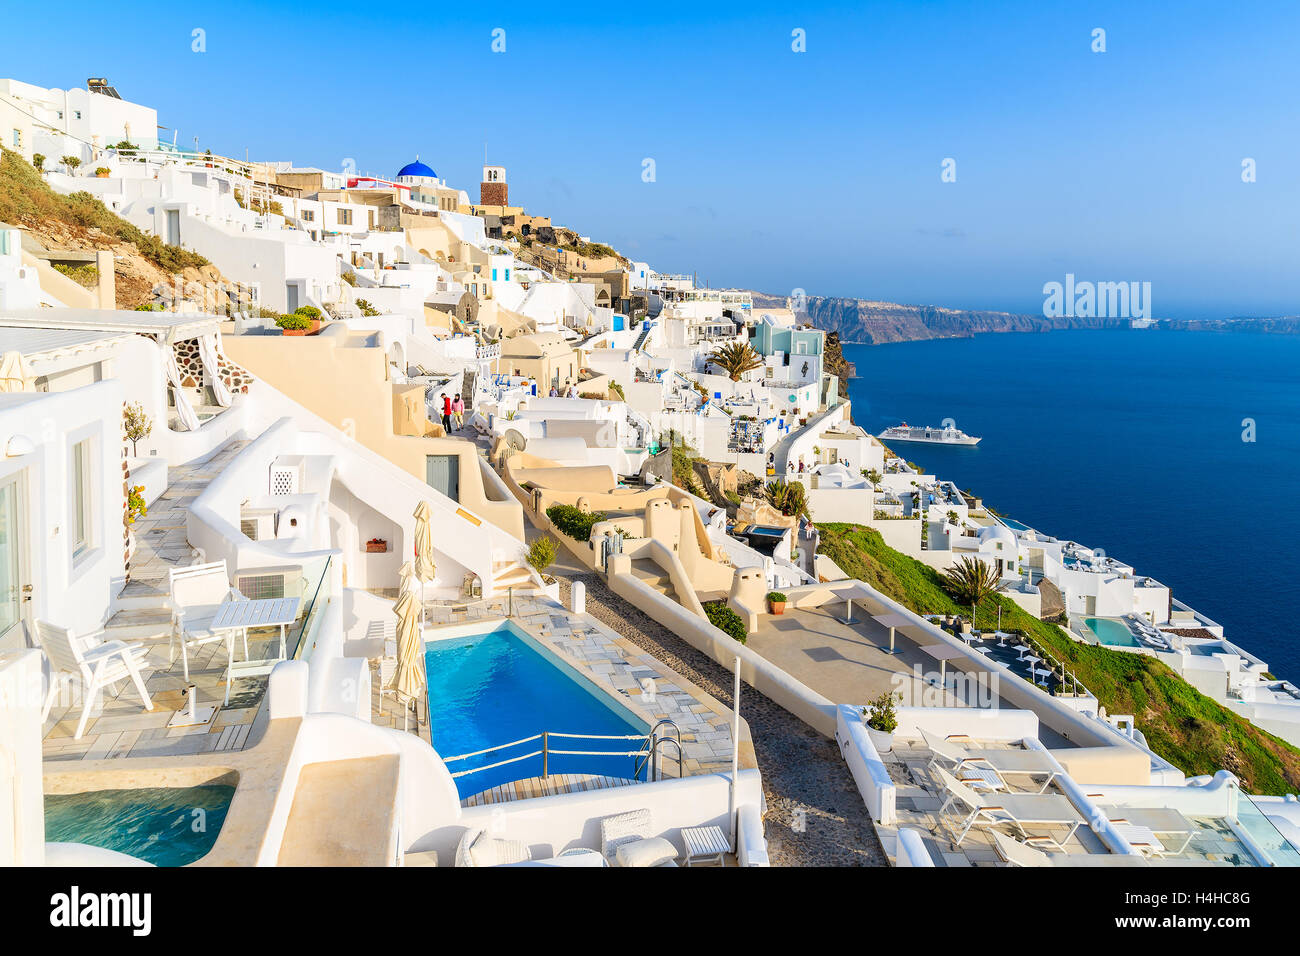 Vista de Firostefani aldea con muchos hoteles boutique construido sobre el acantilado, la isla de Santorini, Grecia Foto de stock